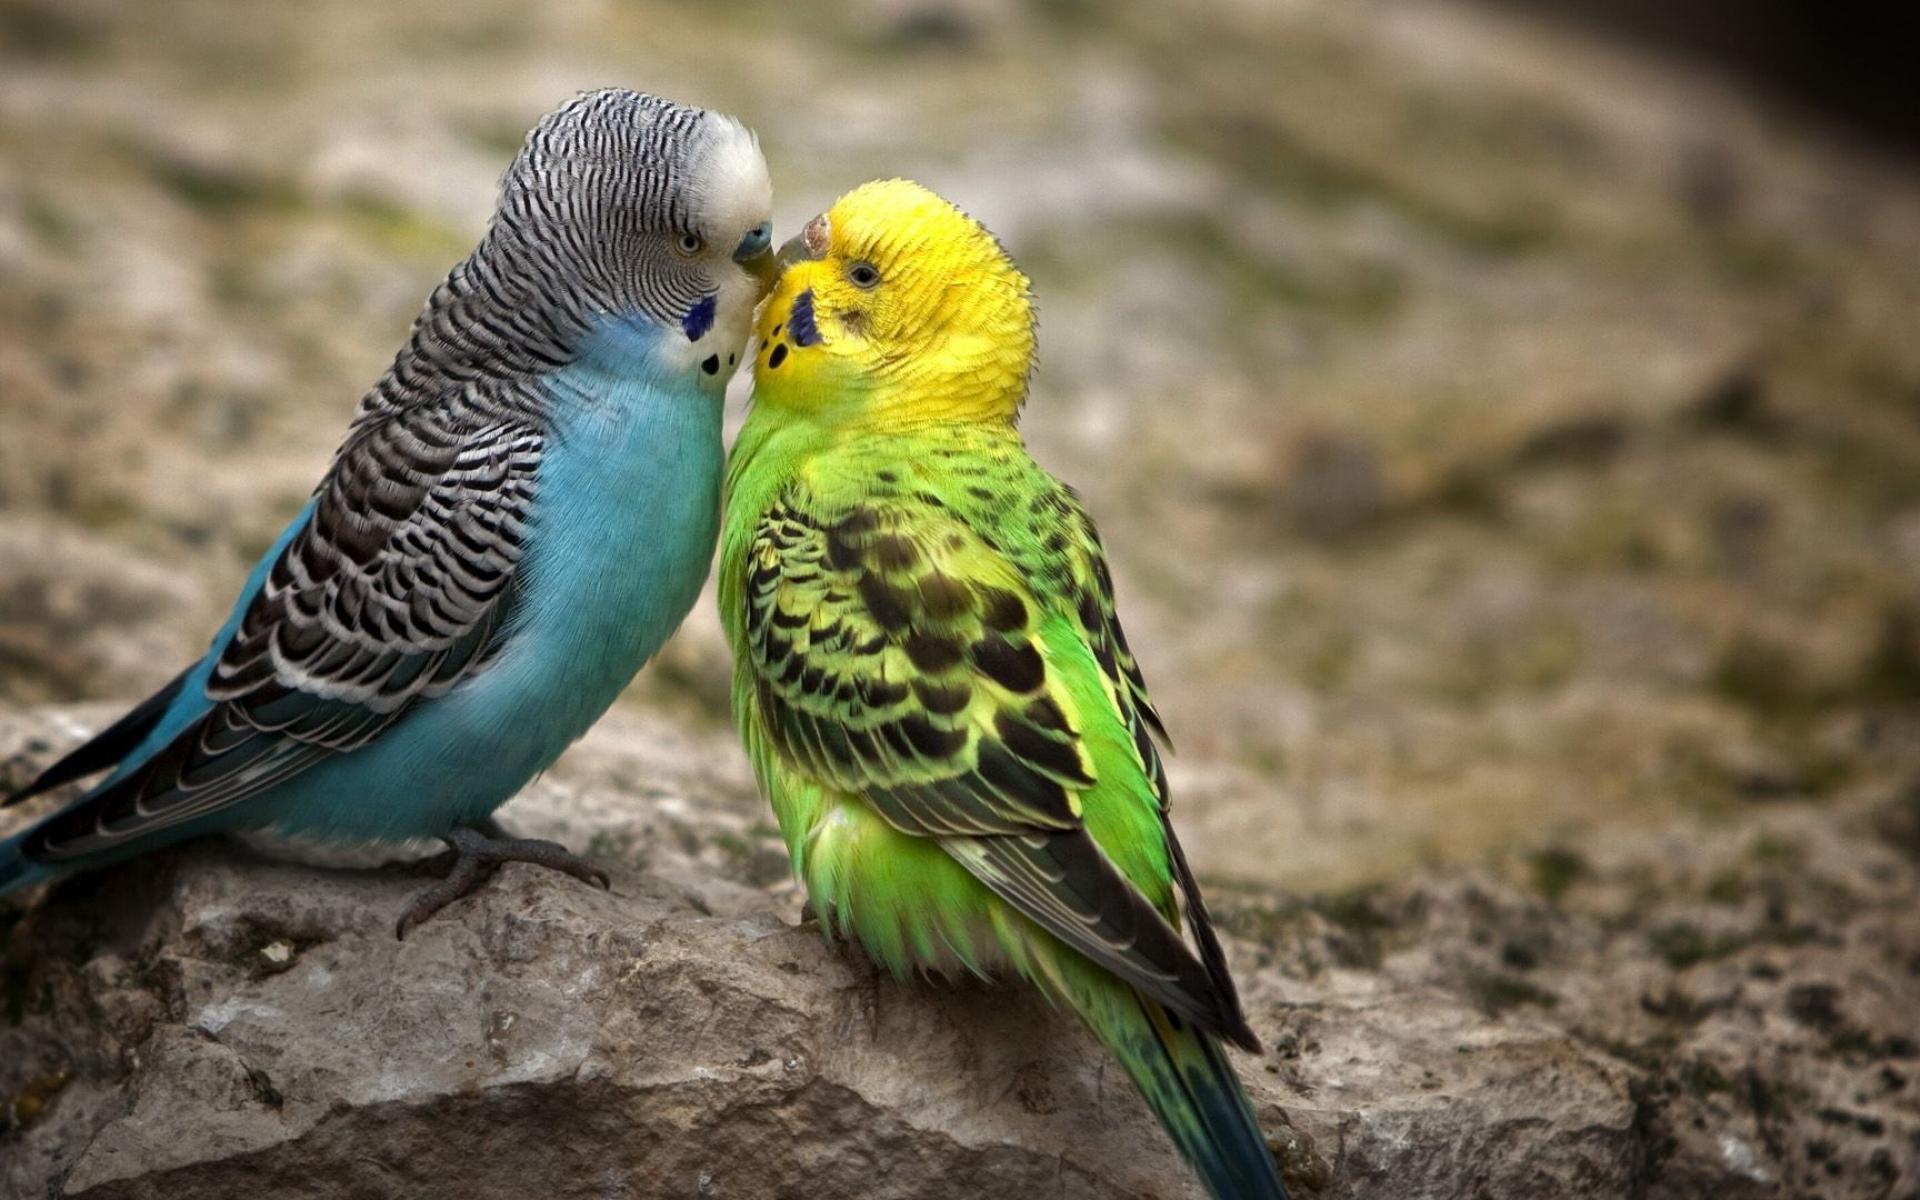 mobile desktop background birds images parrot download